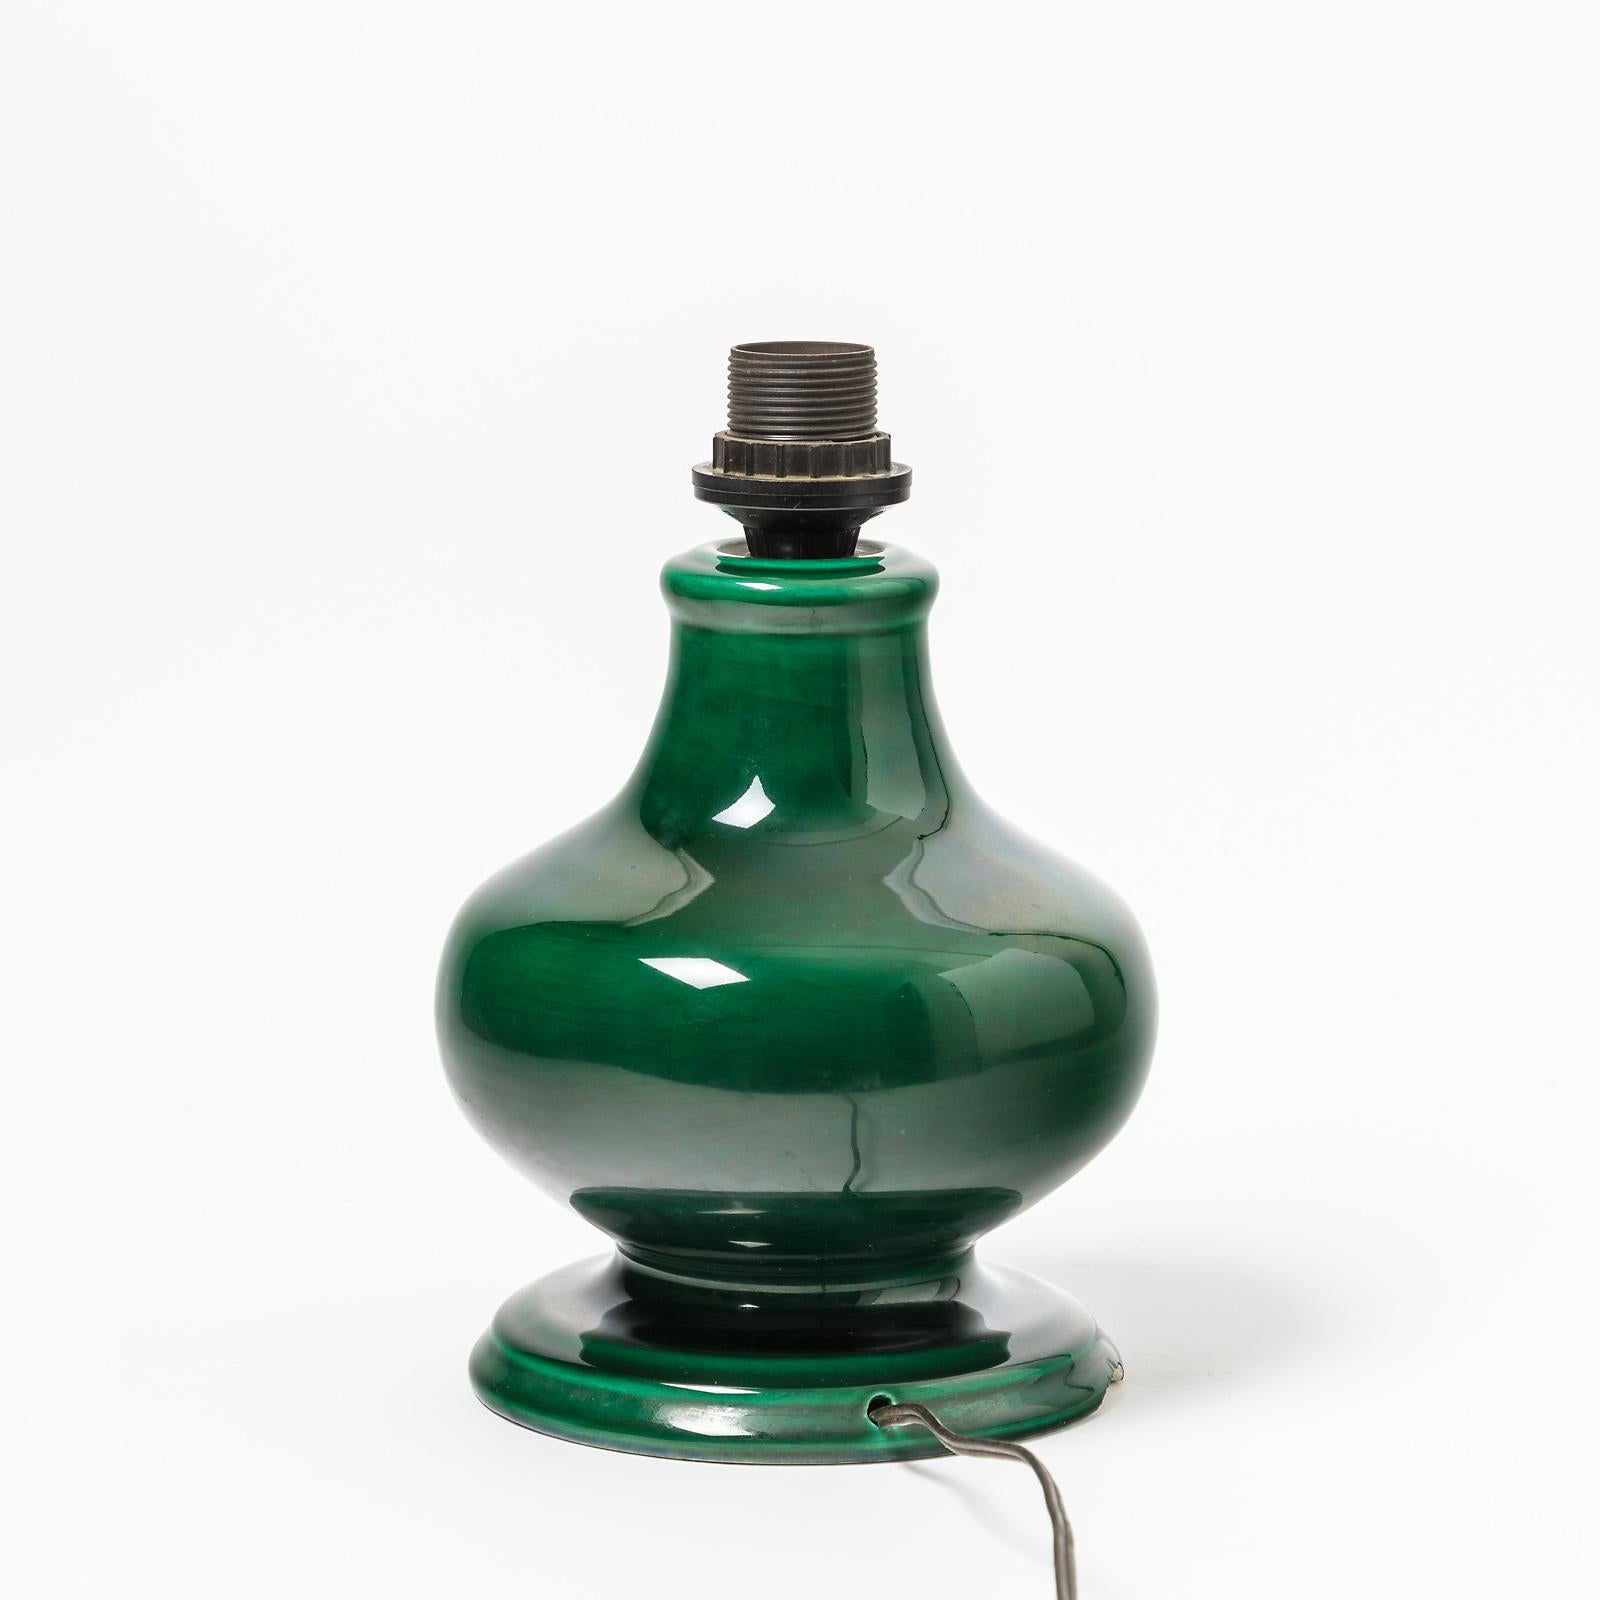 Eine Keramiklampe mit grüner Glasur.
Vallauris, Frankreich.
Perfekter Originalzustand,
ca. 1960-1970.
Signiert unter dem Sockel XF.
Verkauft mit einer neuen europäischen elektrischen Anlage.
Die Abmessungen sind nur für Keramik angegeben.